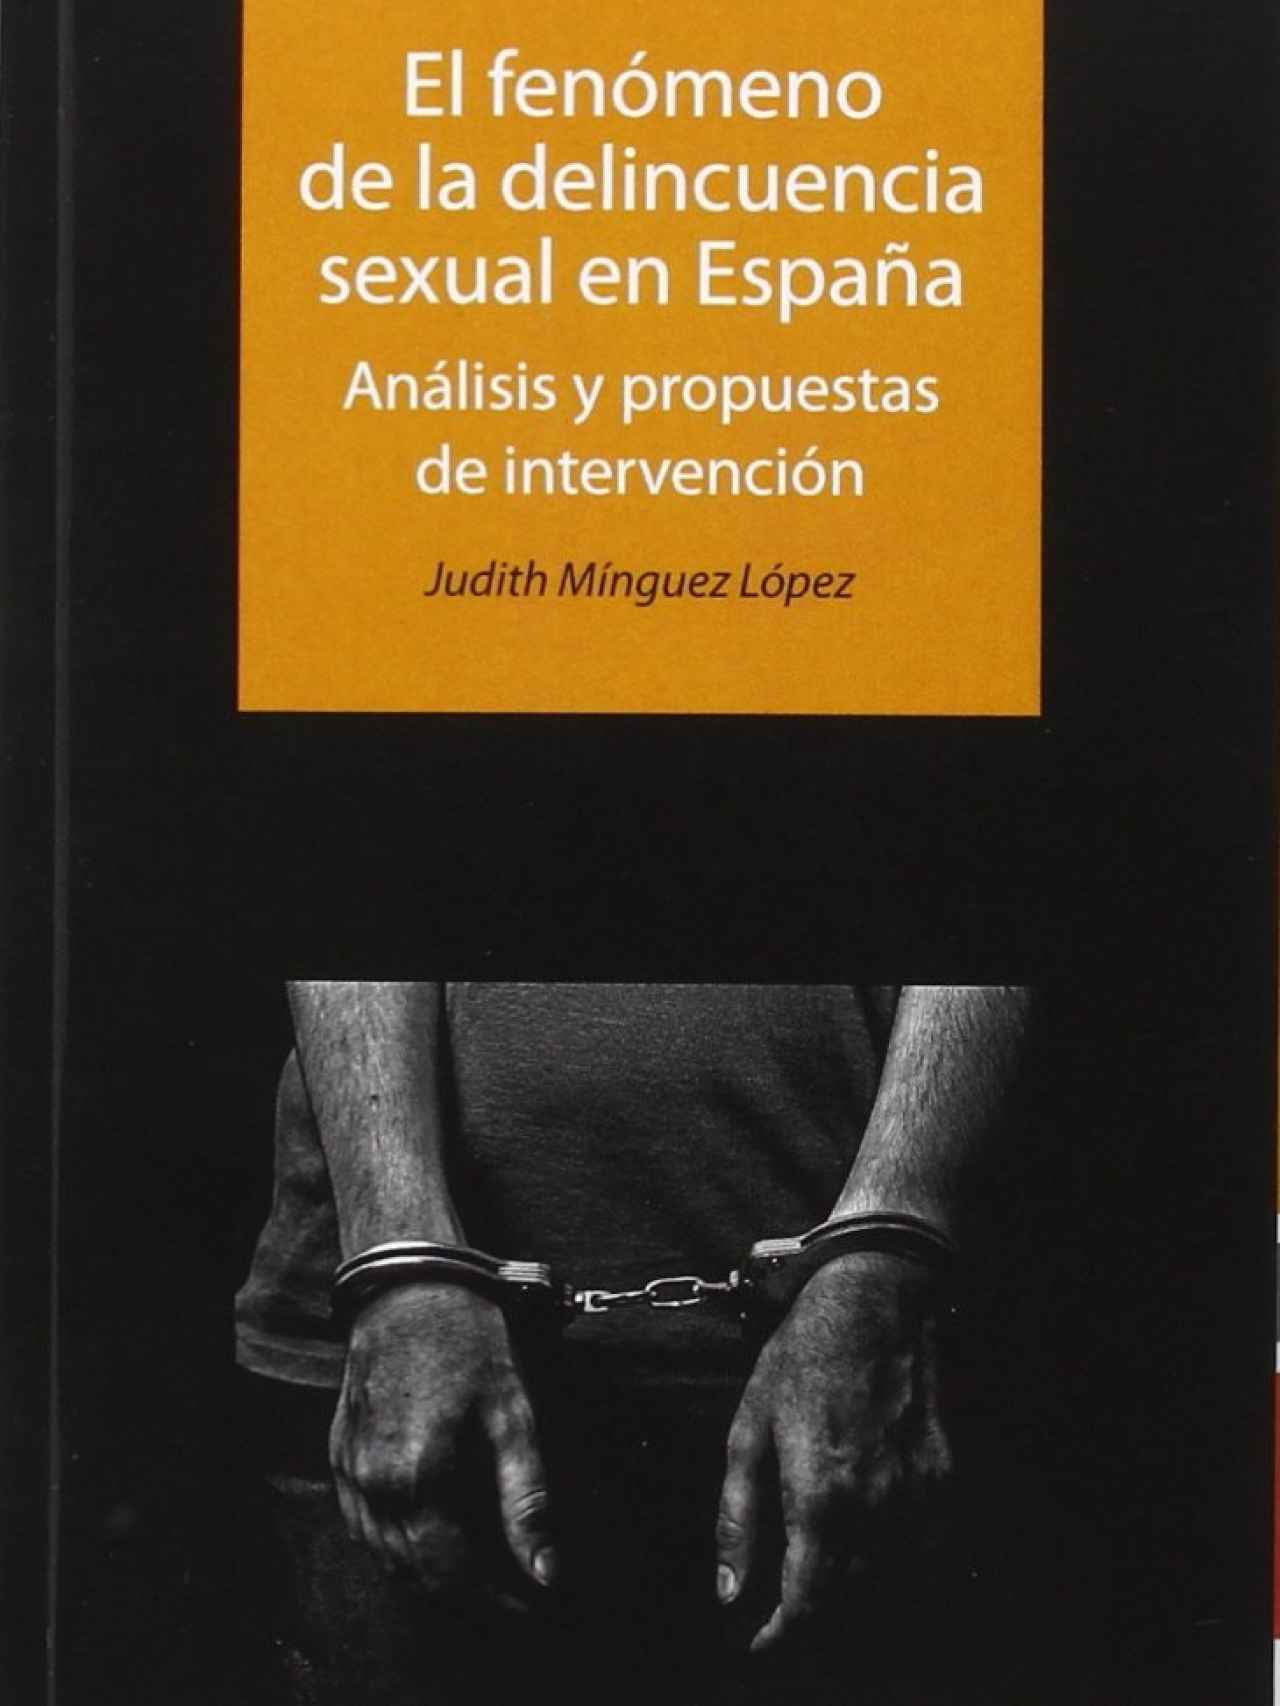 El fenómeno de la delincuencia sexual en España. Análisis y propuestas de intervención